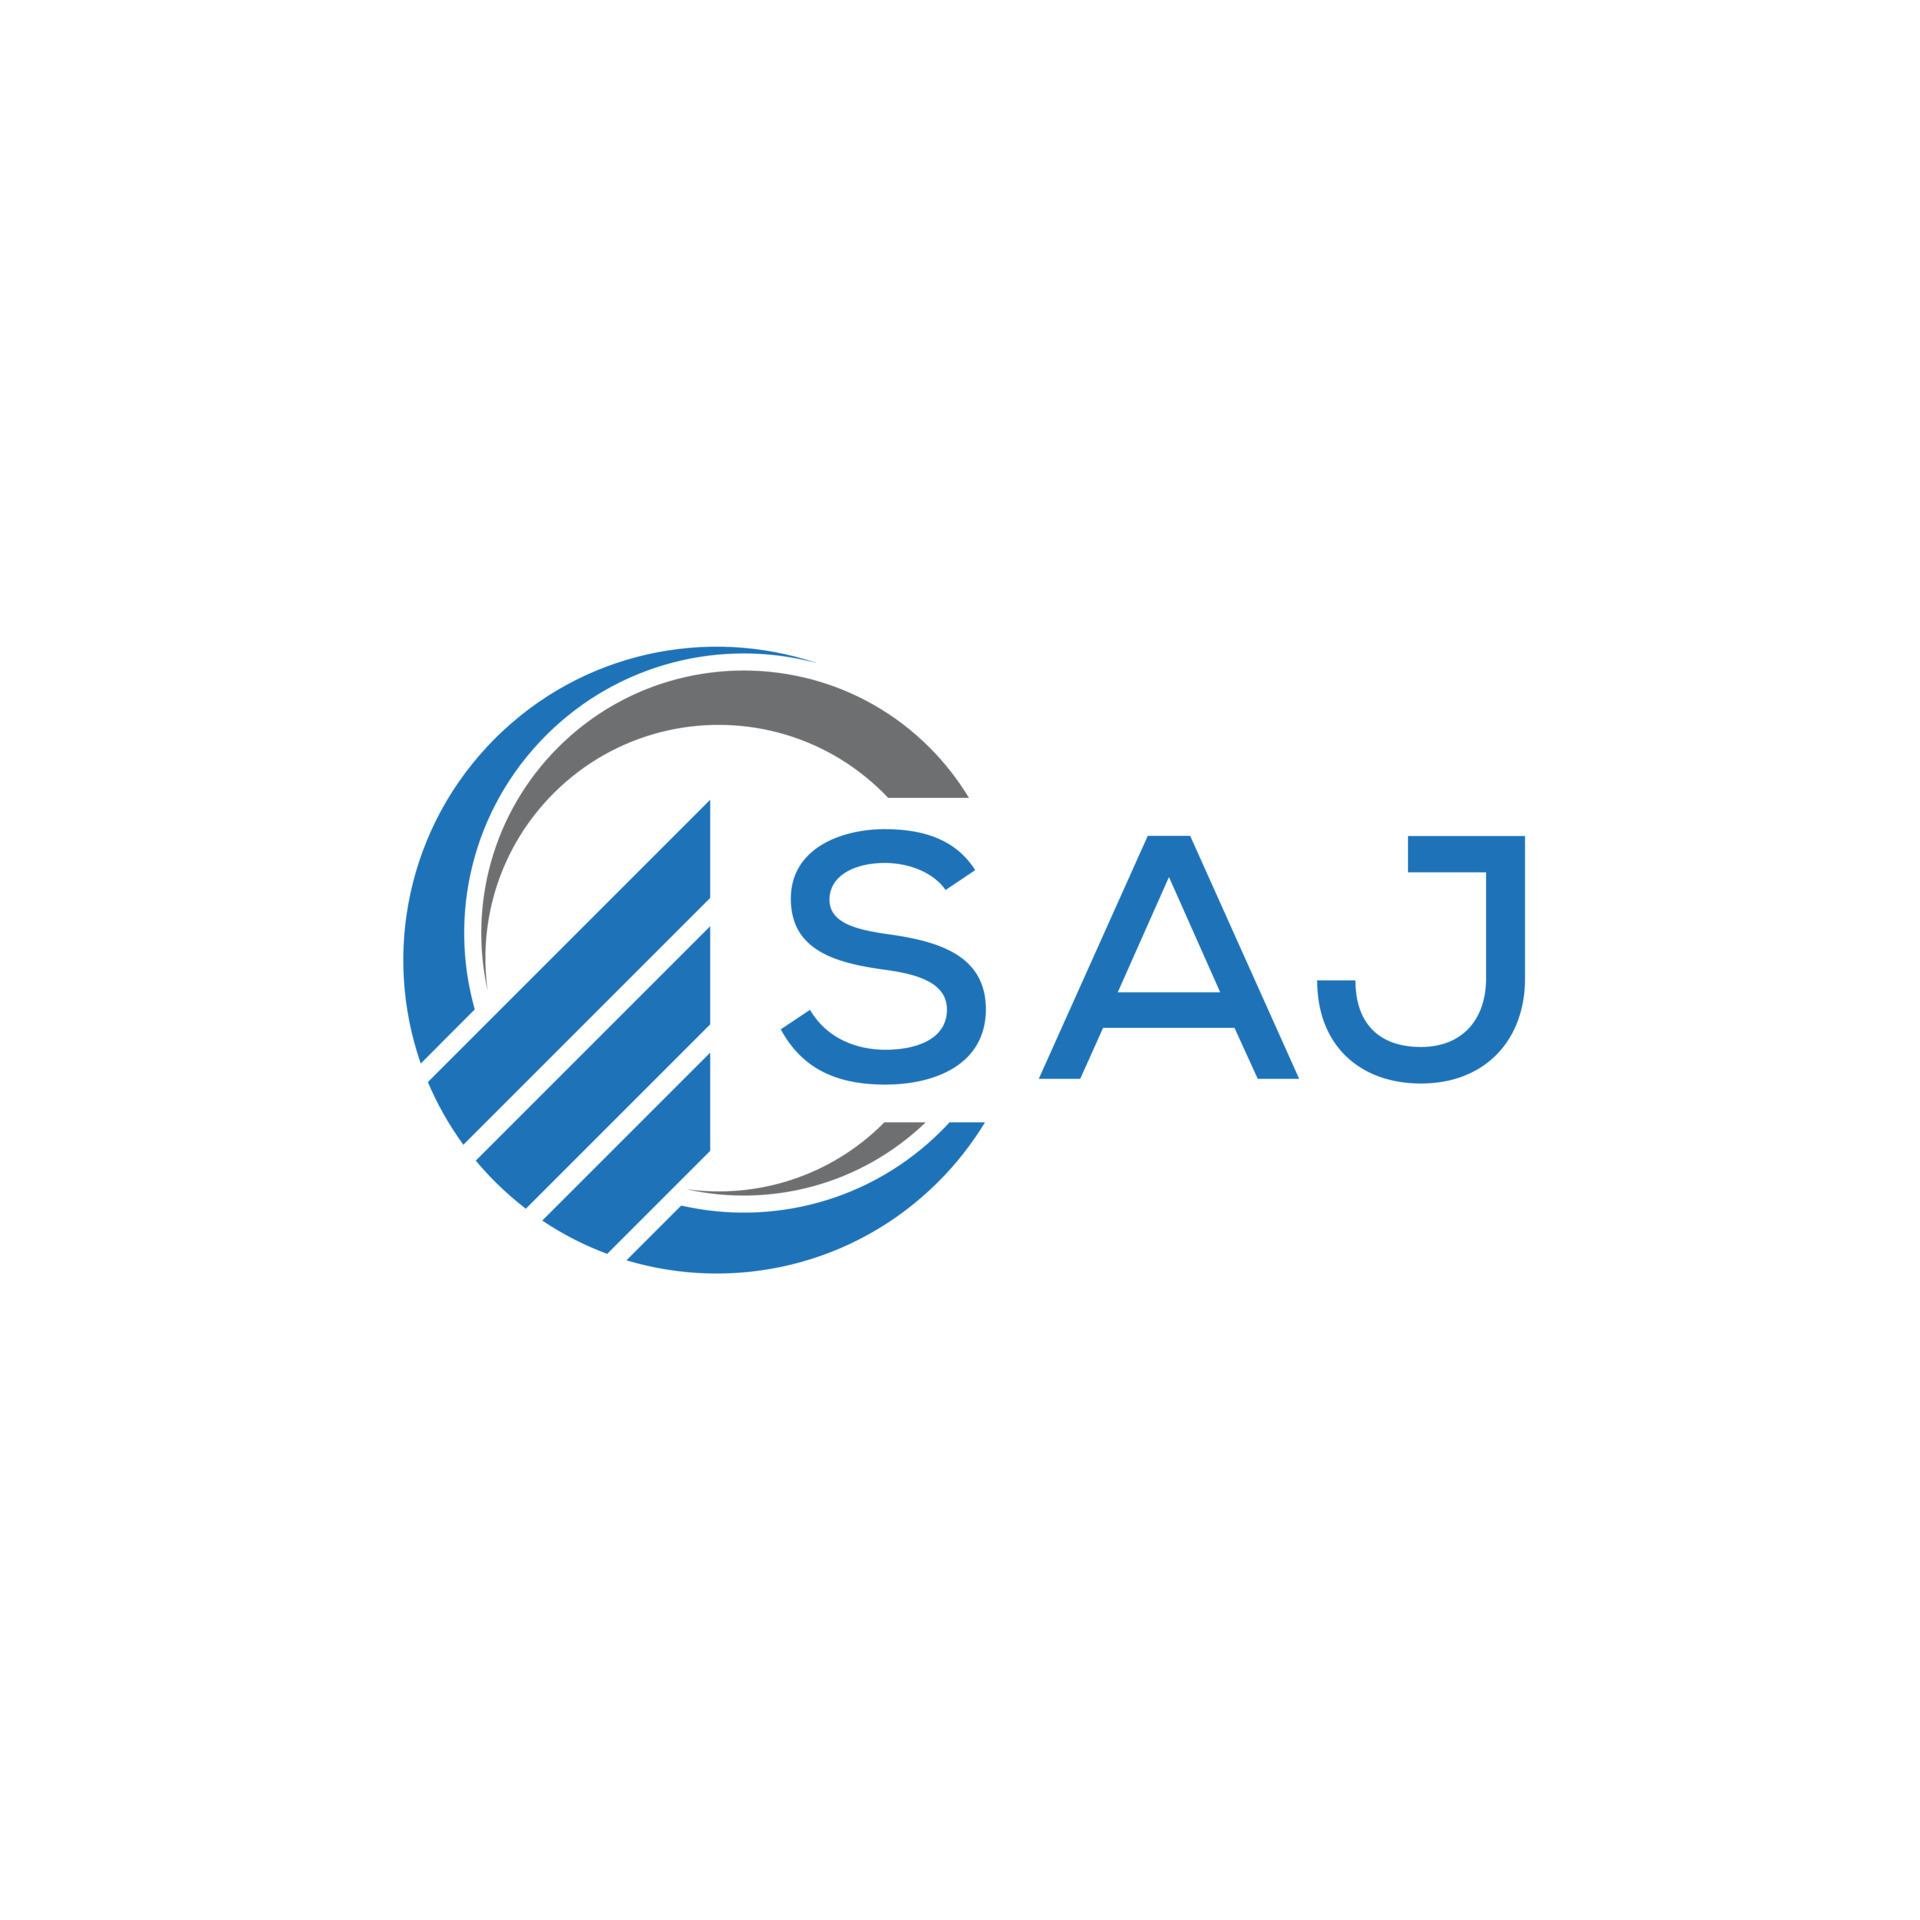 Saj Letter Original Monogram Logo Design Stock Vector (Royalty Free)  1923450917 | Shutterstock